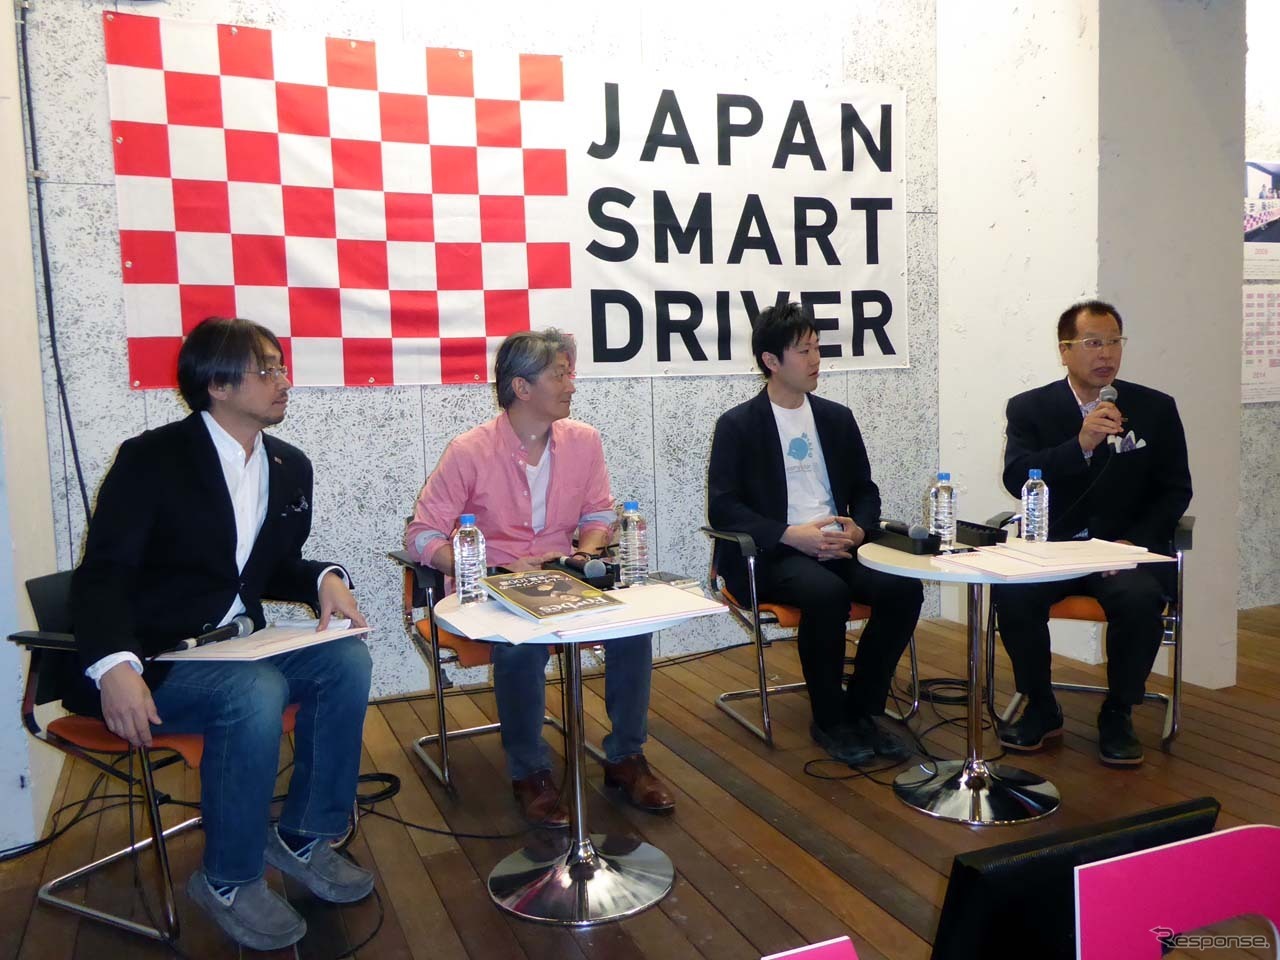 「SMART DRIVER」を目指すために思いを語る4名。左から小山薫堂氏、小笠原 治氏、石川善樹氏、菰田 潔氏